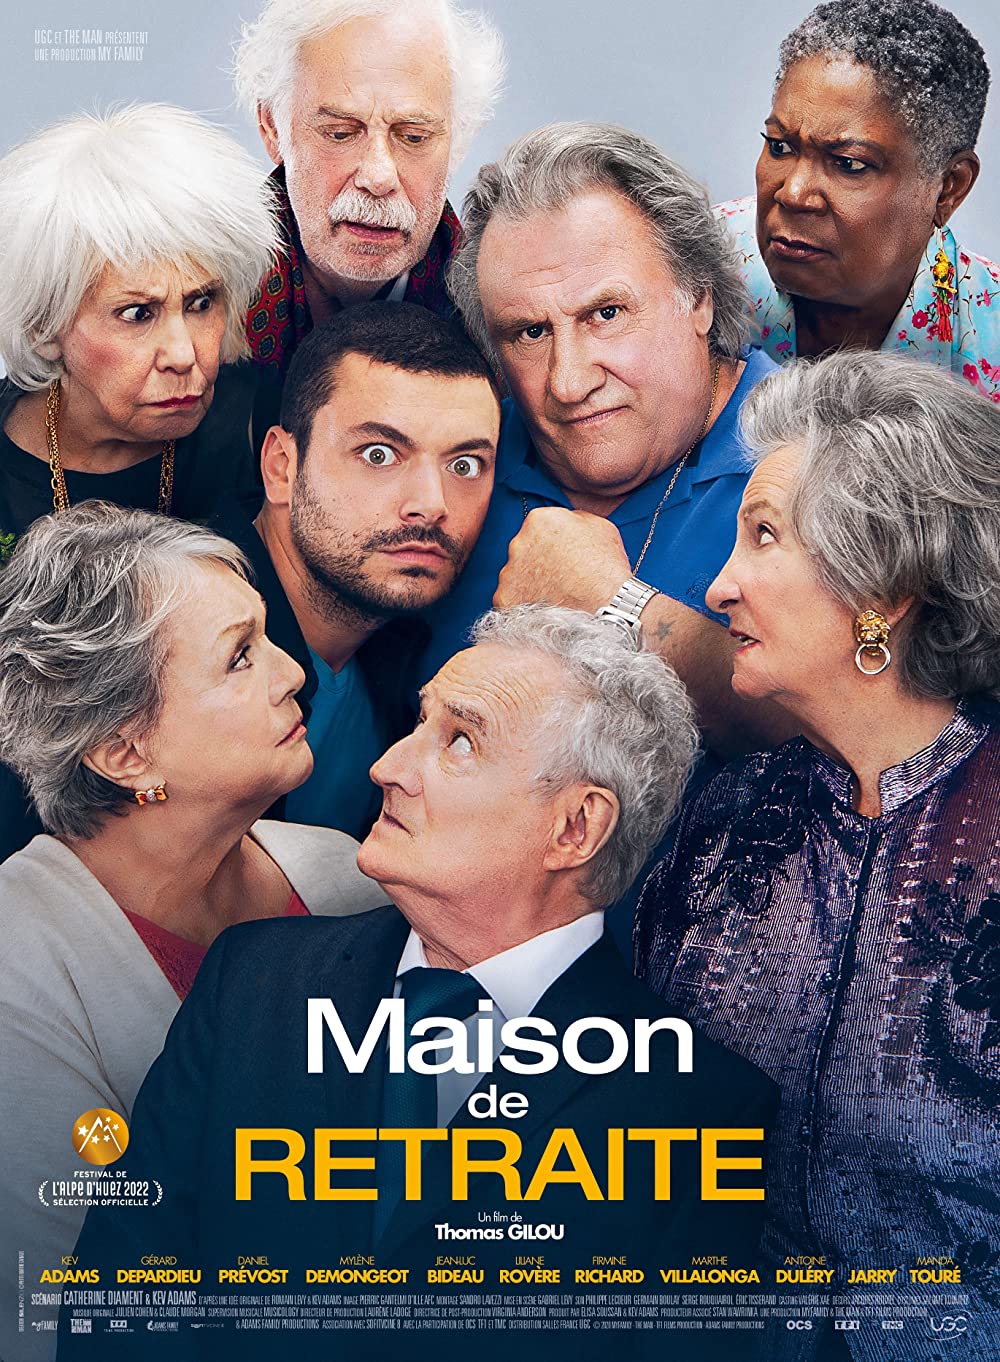 Filmbeschreibung zu Maison de retraite